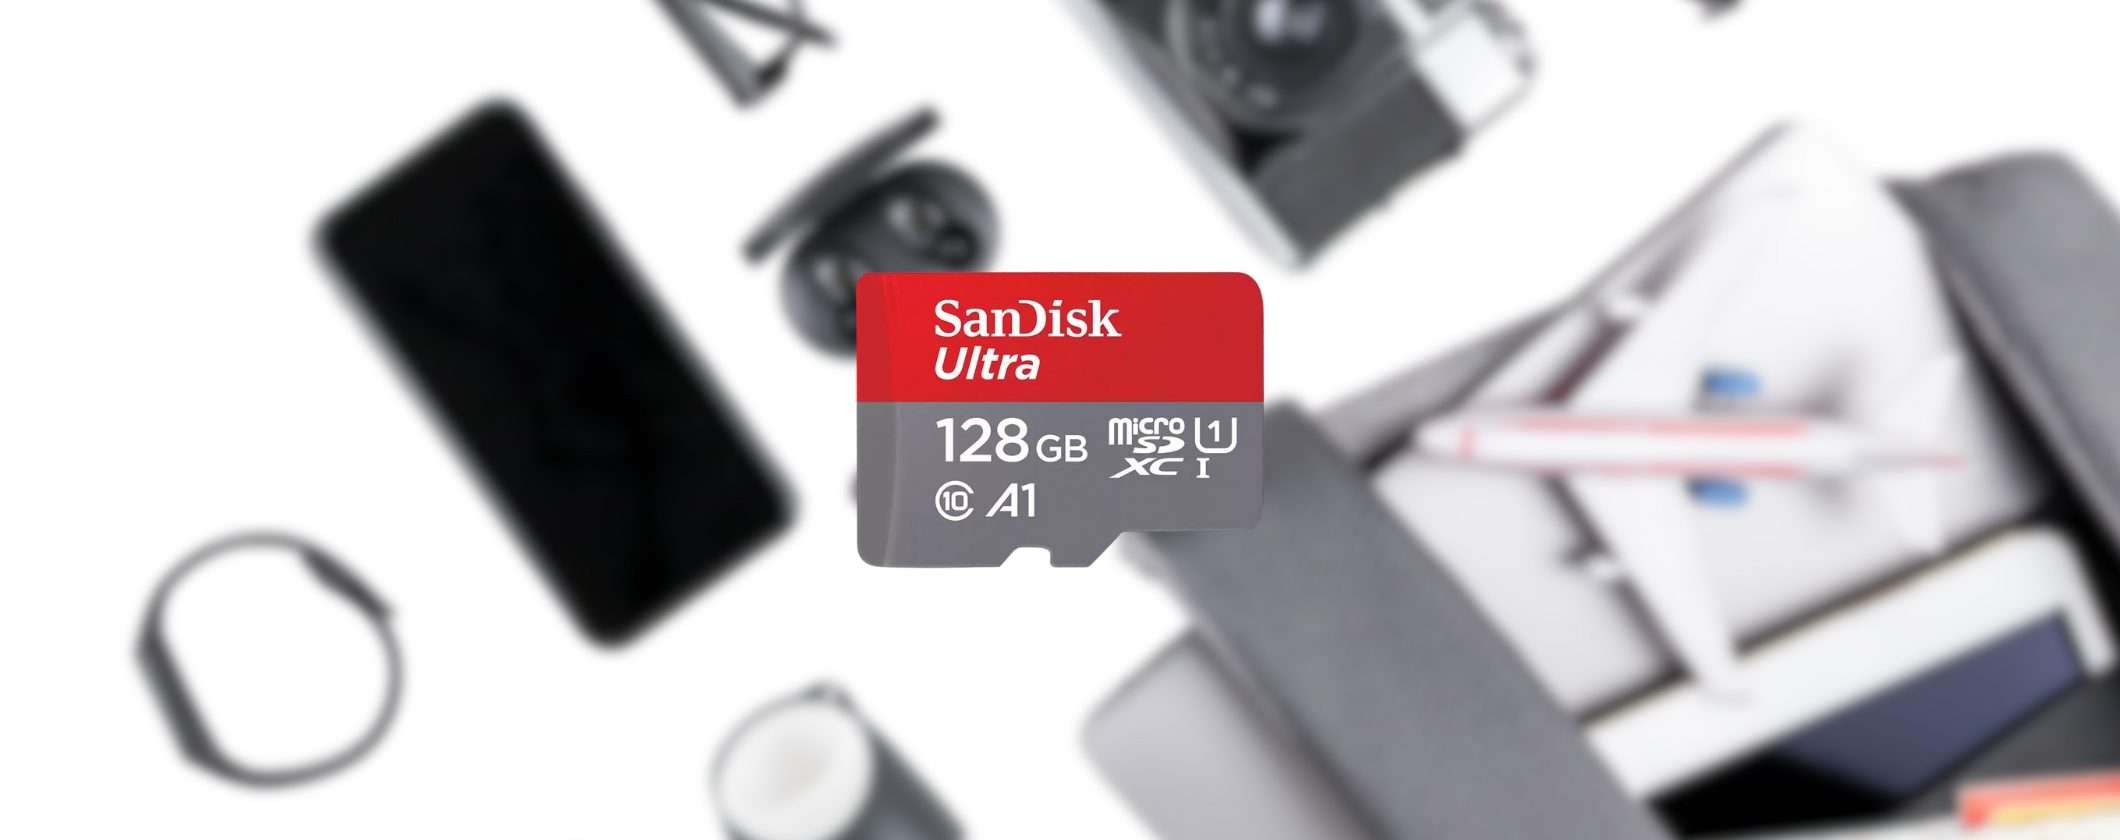 MicroSD SanDisk 128GB: solo 19,99€ su Unieuro, da avere subito